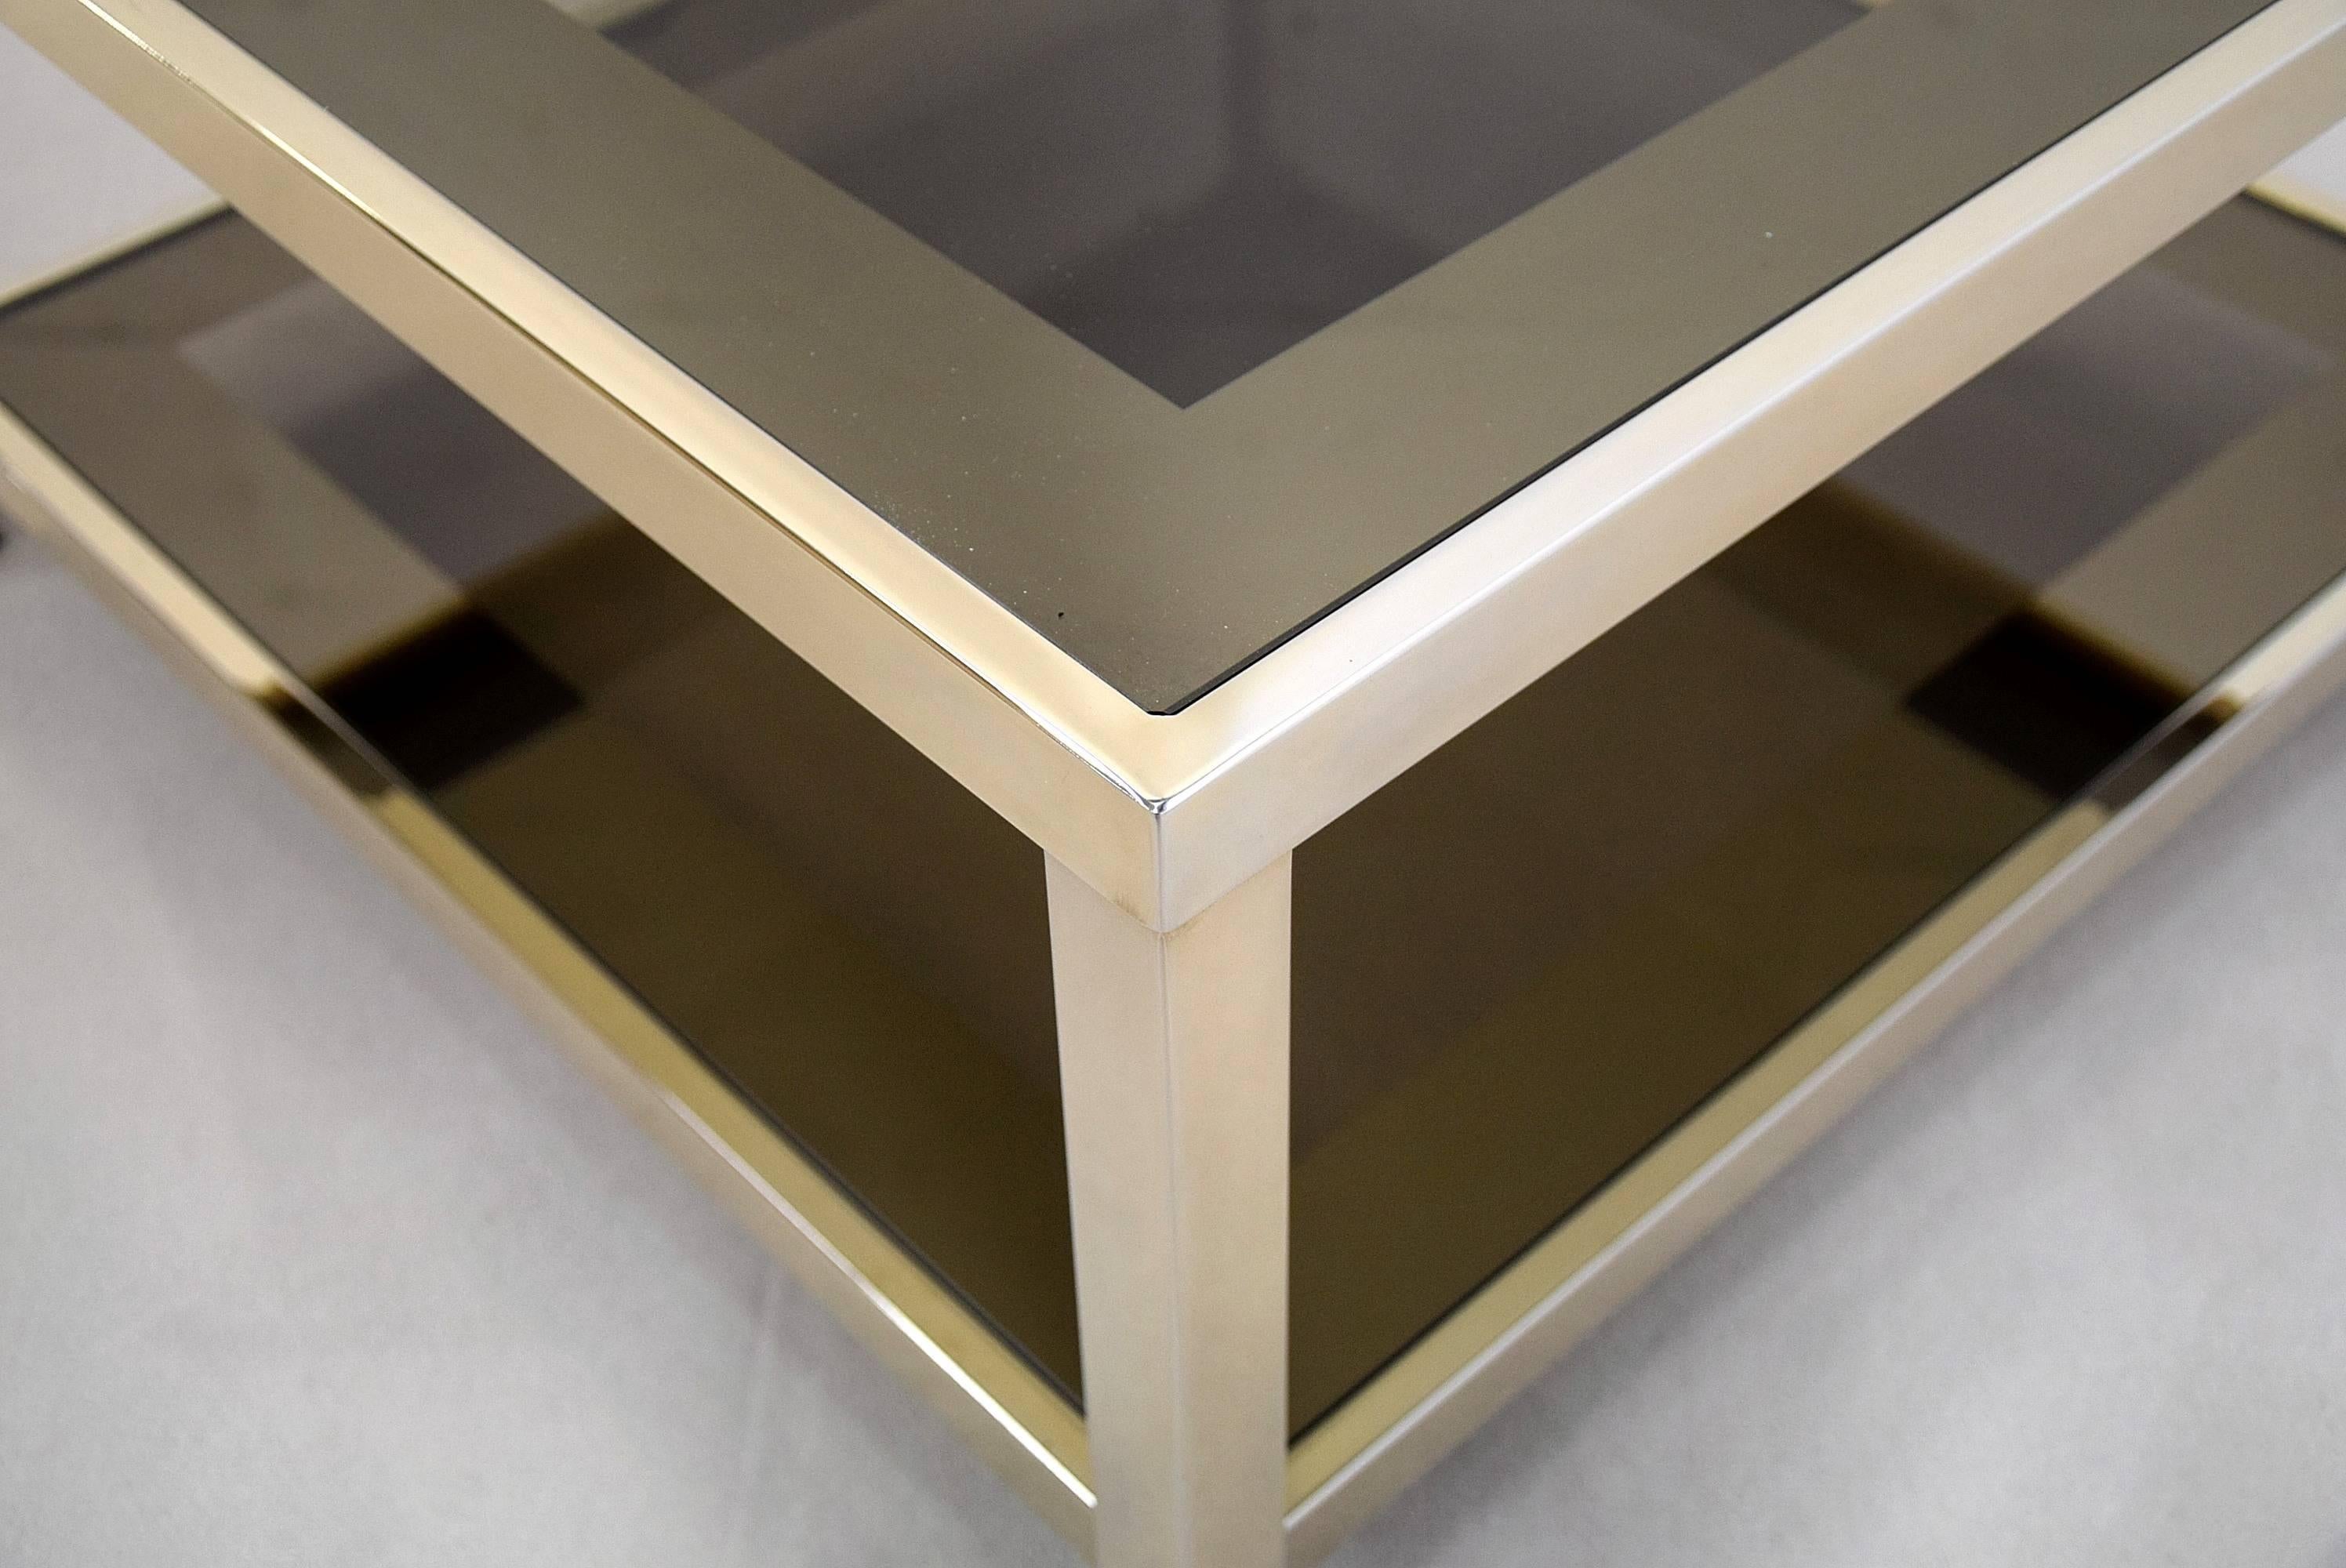 Stilvoller Mid-Century Modern vergoldeter zweistöckiger Couchtisch von Belgo Chrome, Belgien.

Die braunen Rauchglasträger haben einen verspiegelten Rand.

Der Tisch ist in sehr gutem Zustand.

Abmessungen: L.70 x B.70 x H.36cm.

Der Tisch wird in